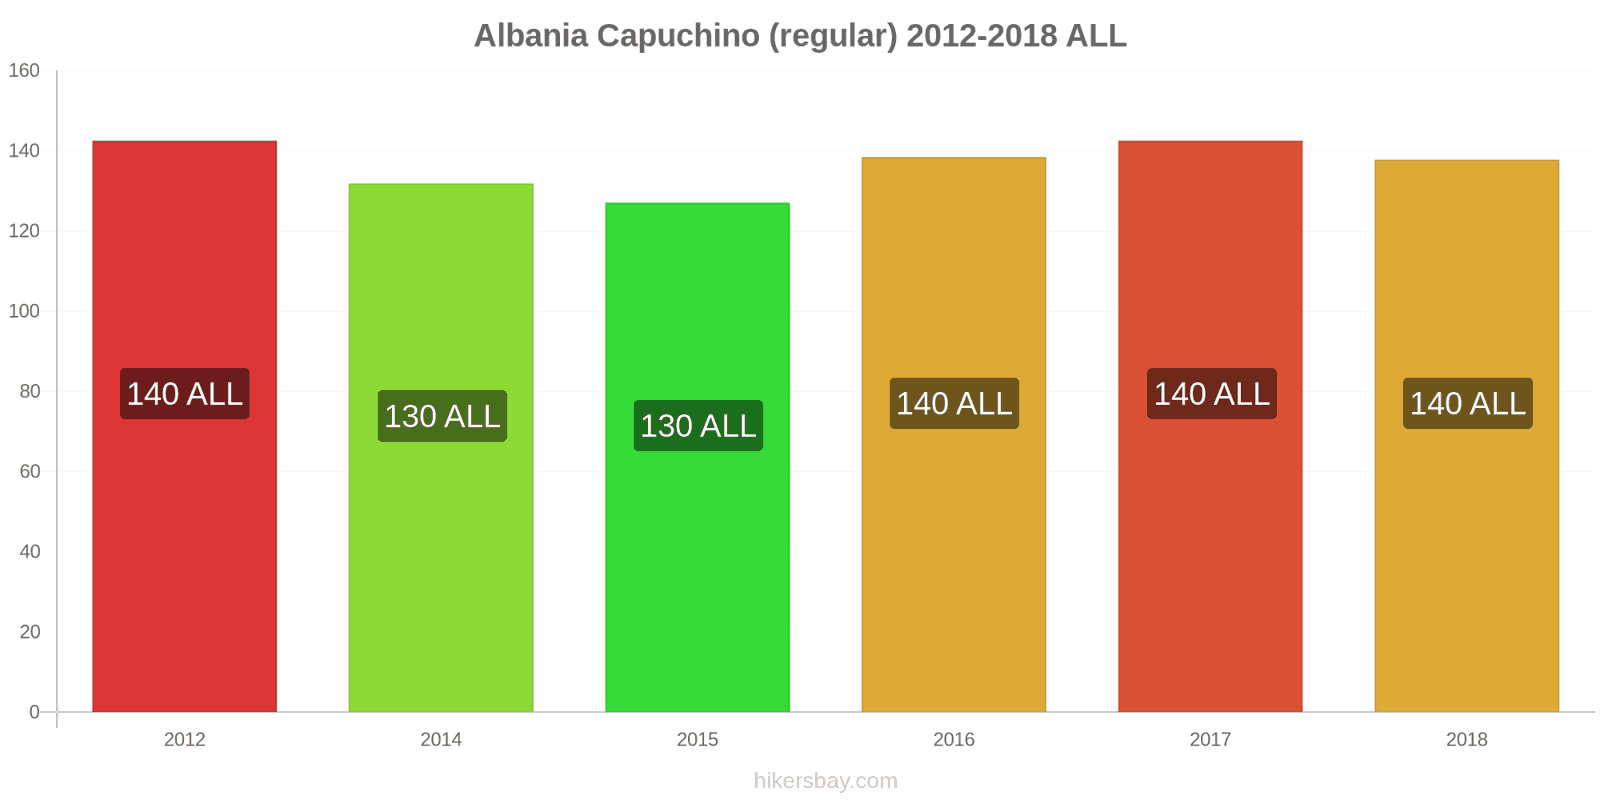 Albania cambios de precios Cappuccino hikersbay.com